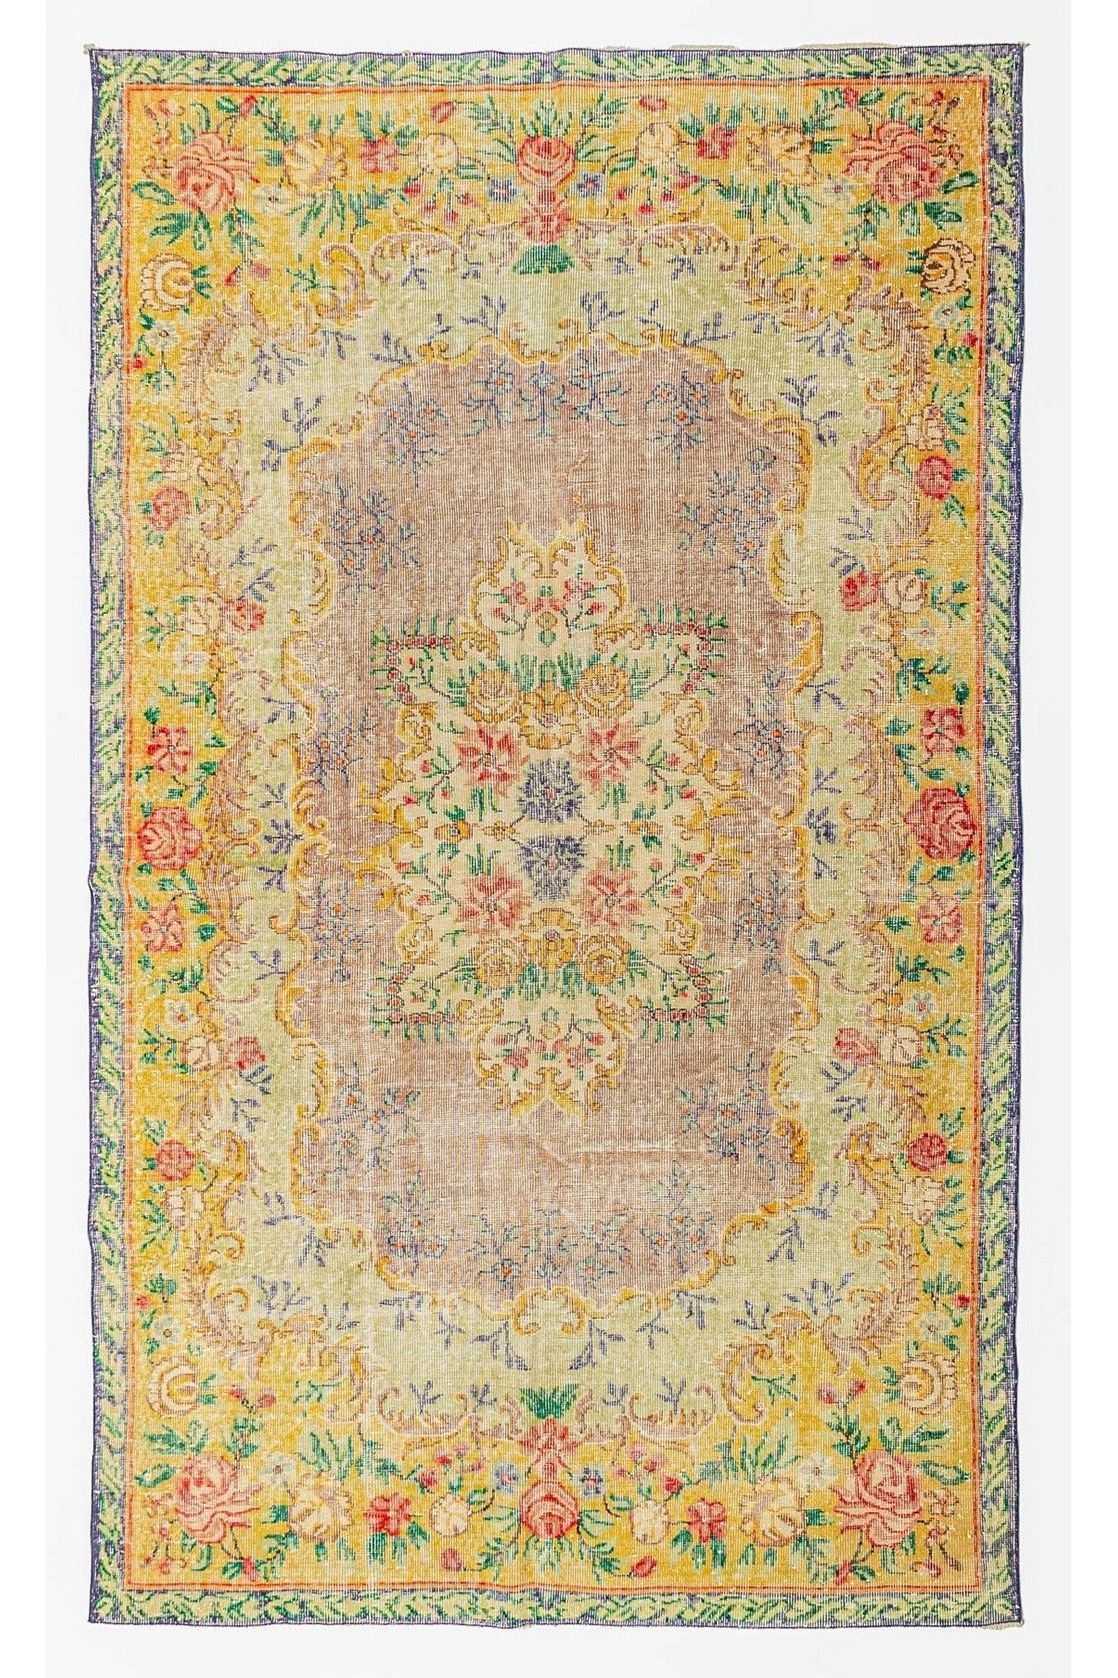 #Turkish_Carpets_Rugs# #Modern_Carpets# #Abrash_Carpets#Abrash-Bahrain-28-190X302